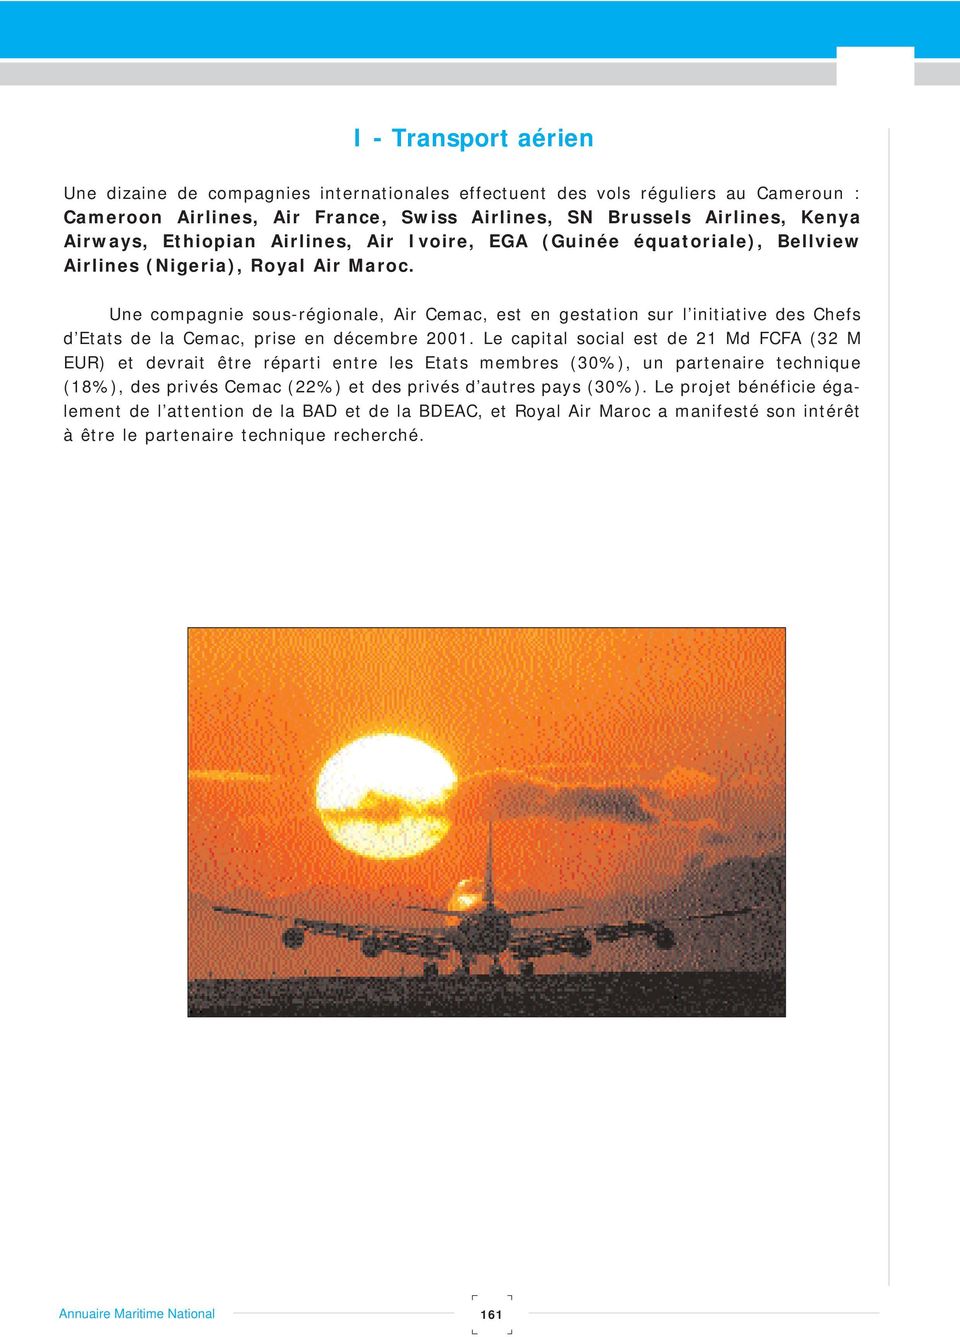 Une compagnie sous-régionale, Air Cemac, est en gestation sur l initiative des Chefs d Etats de la Cemac, prise en décembre 2001.